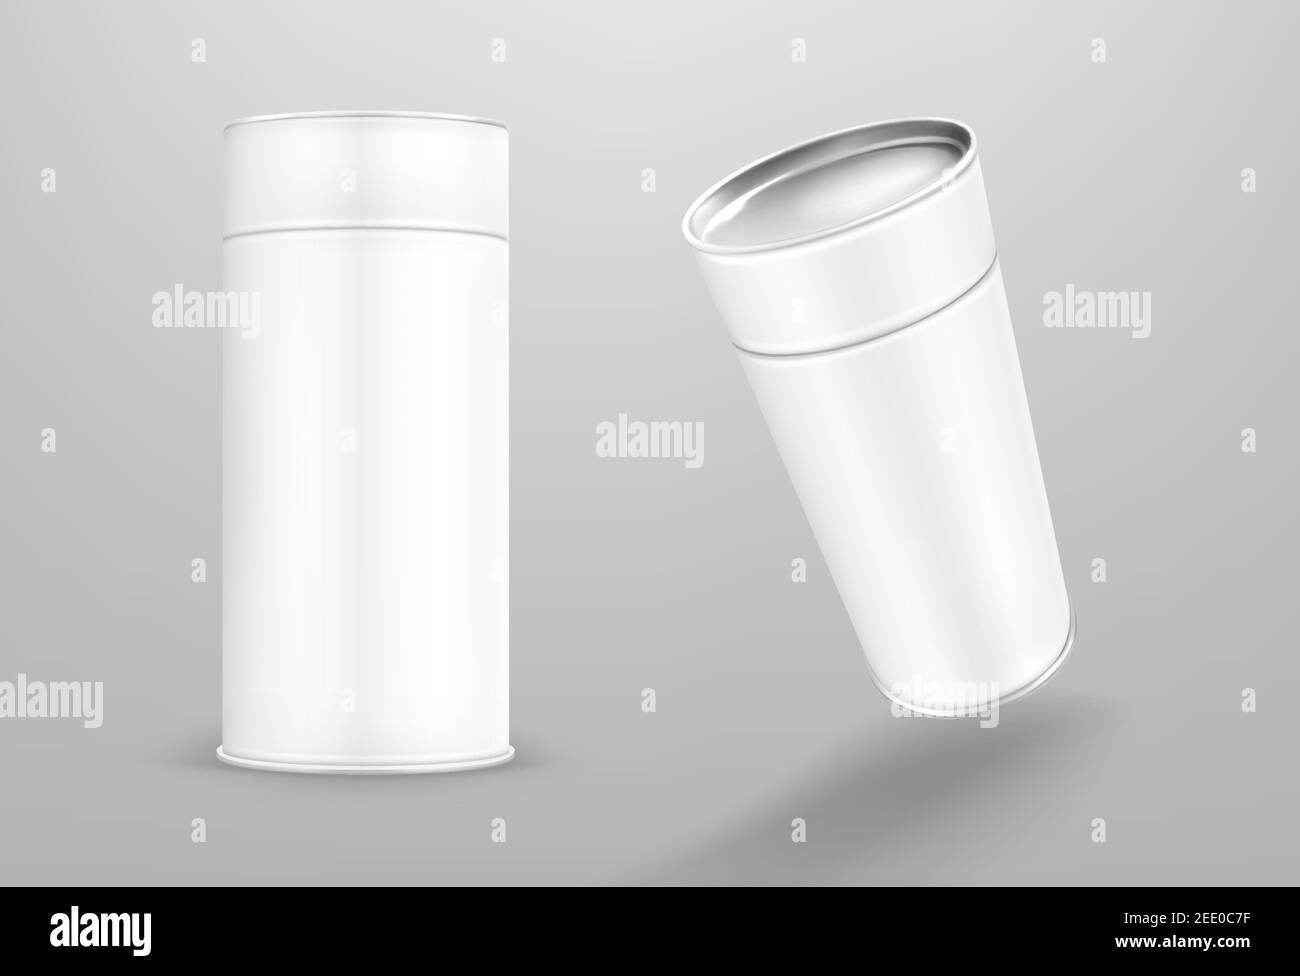 Tube en papier blanc, boîte cylindrique en carton isolée sur fond gris.  Maquette vectorielle réaliste de carton contenant rond, tubus d'emballage  vierge pour les aliments avec bouchon fermé à l'avant et vue